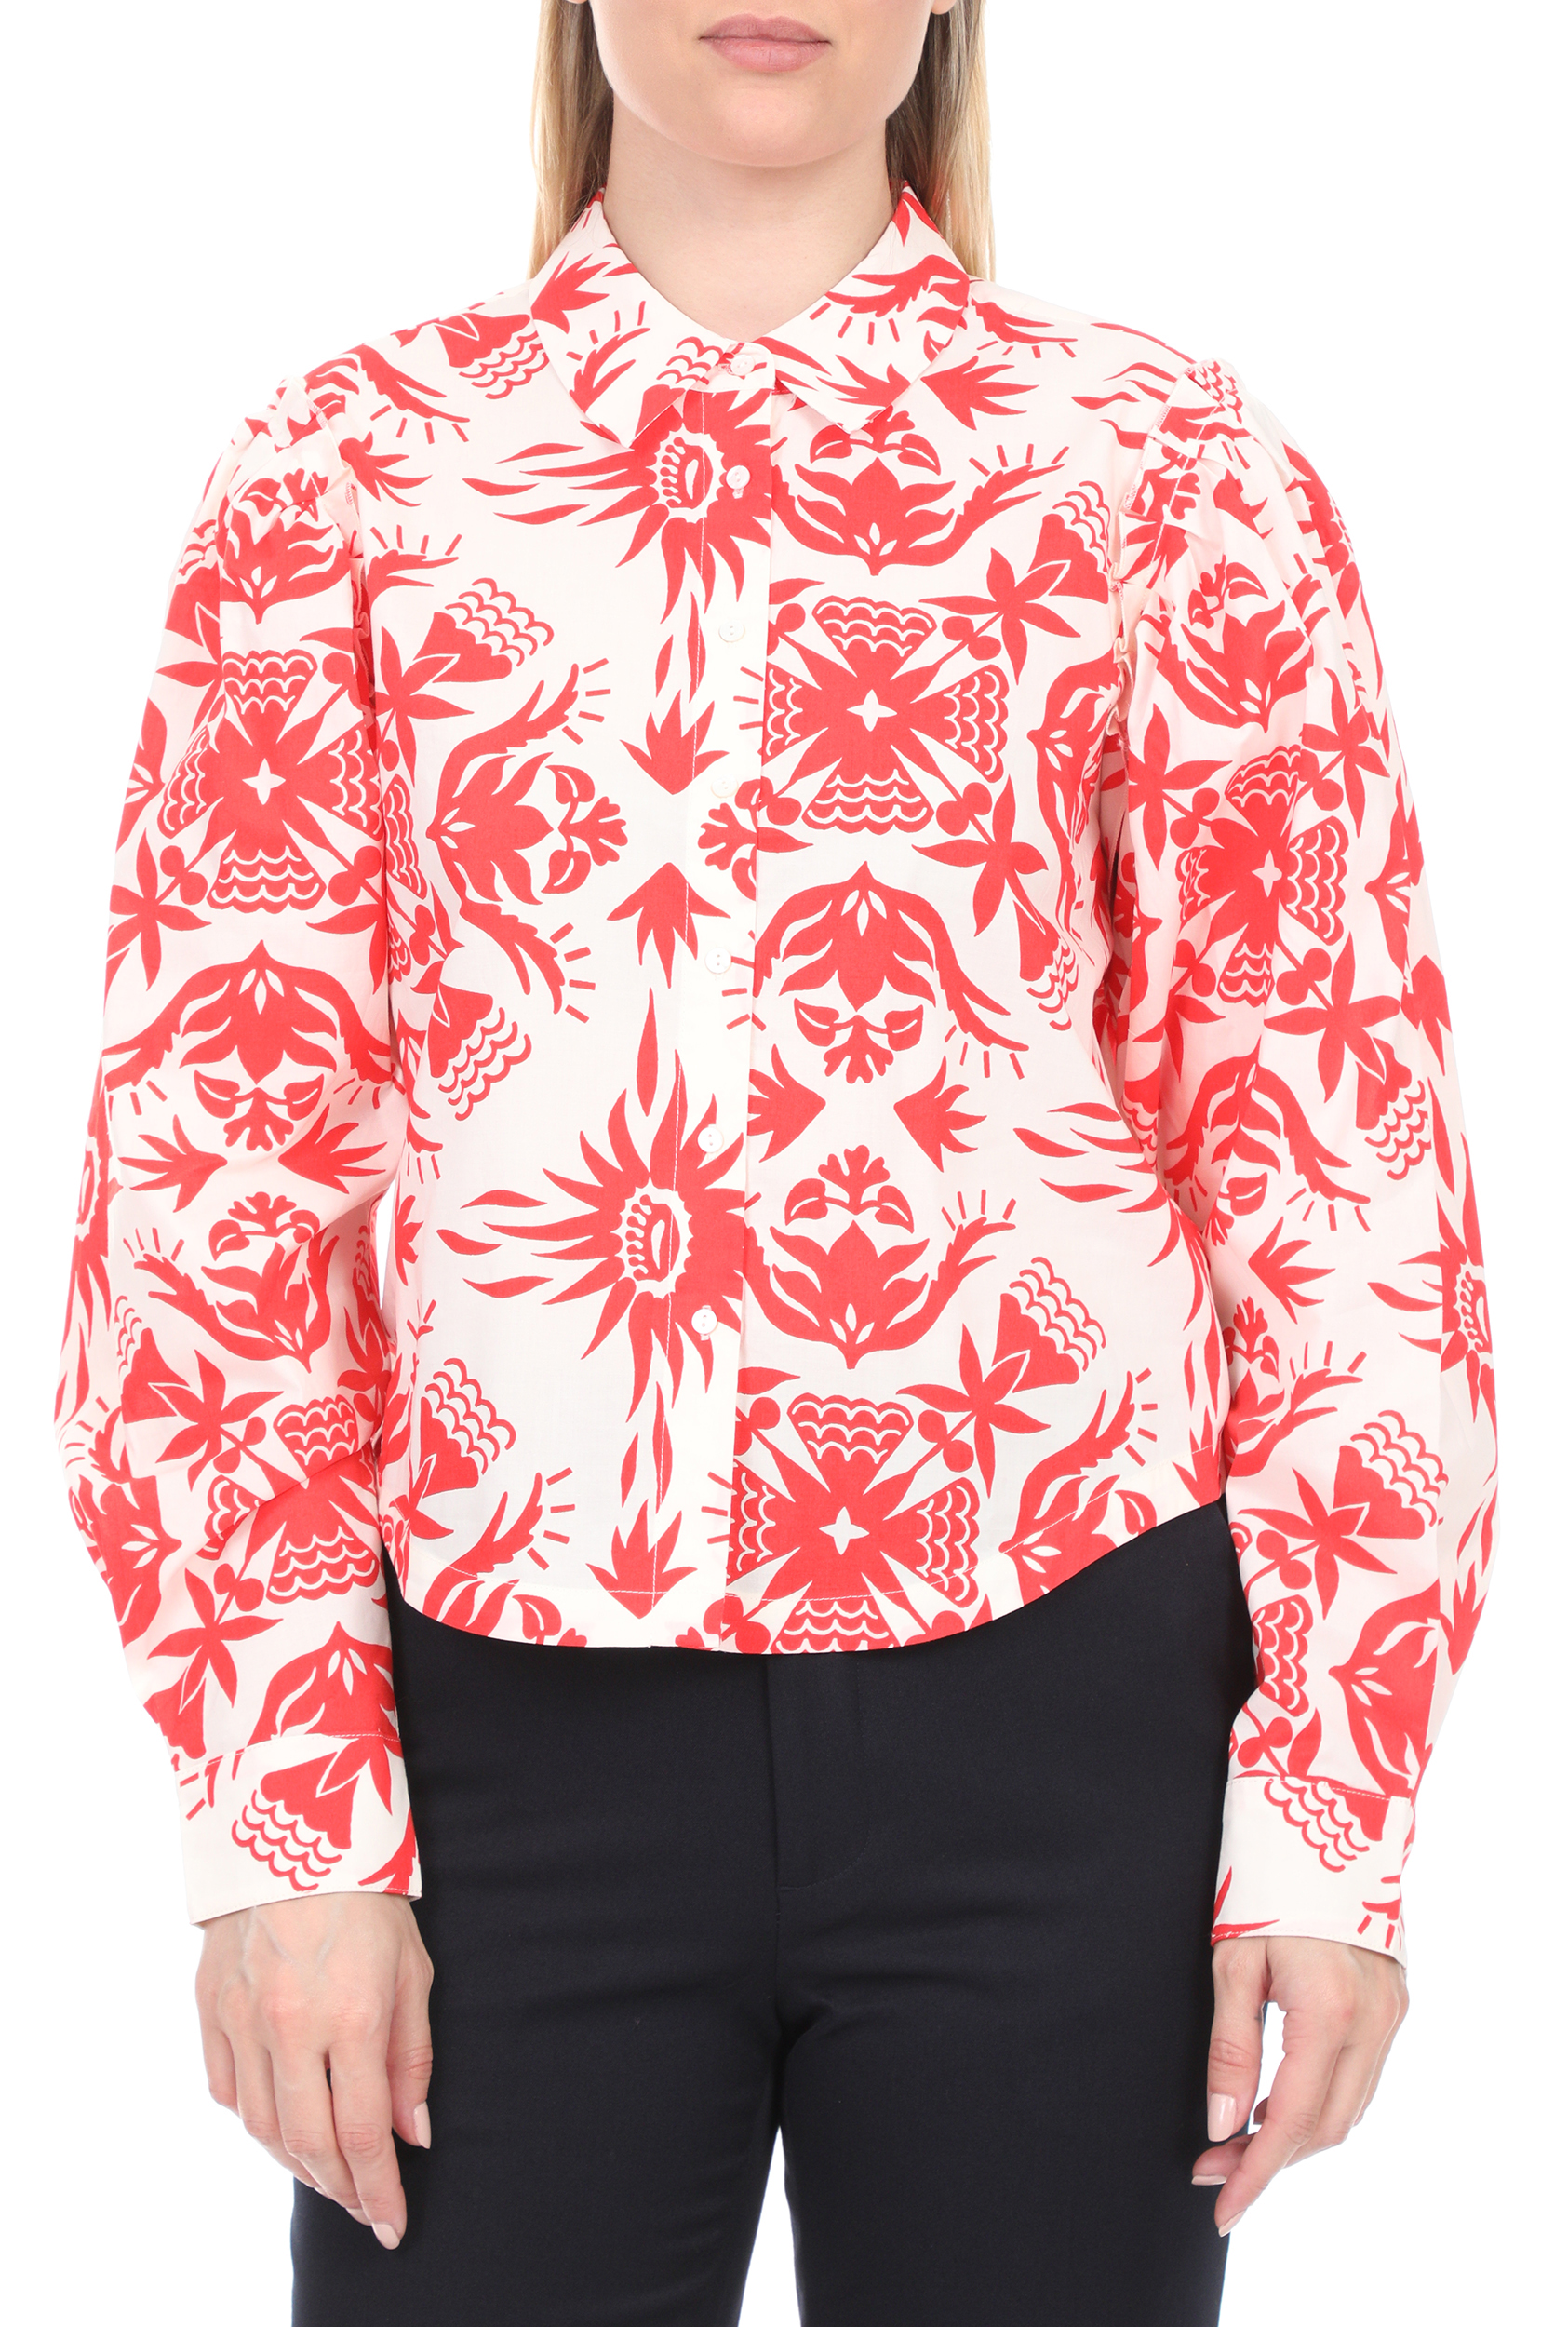 Γυναικεία/Ρούχα/Πουκάμισα/Μακρυμάνικα SCOTCH & SODA - Γυναικείο cropped πουκάμισο SCOTCH & SODA λευκό κόκκινο